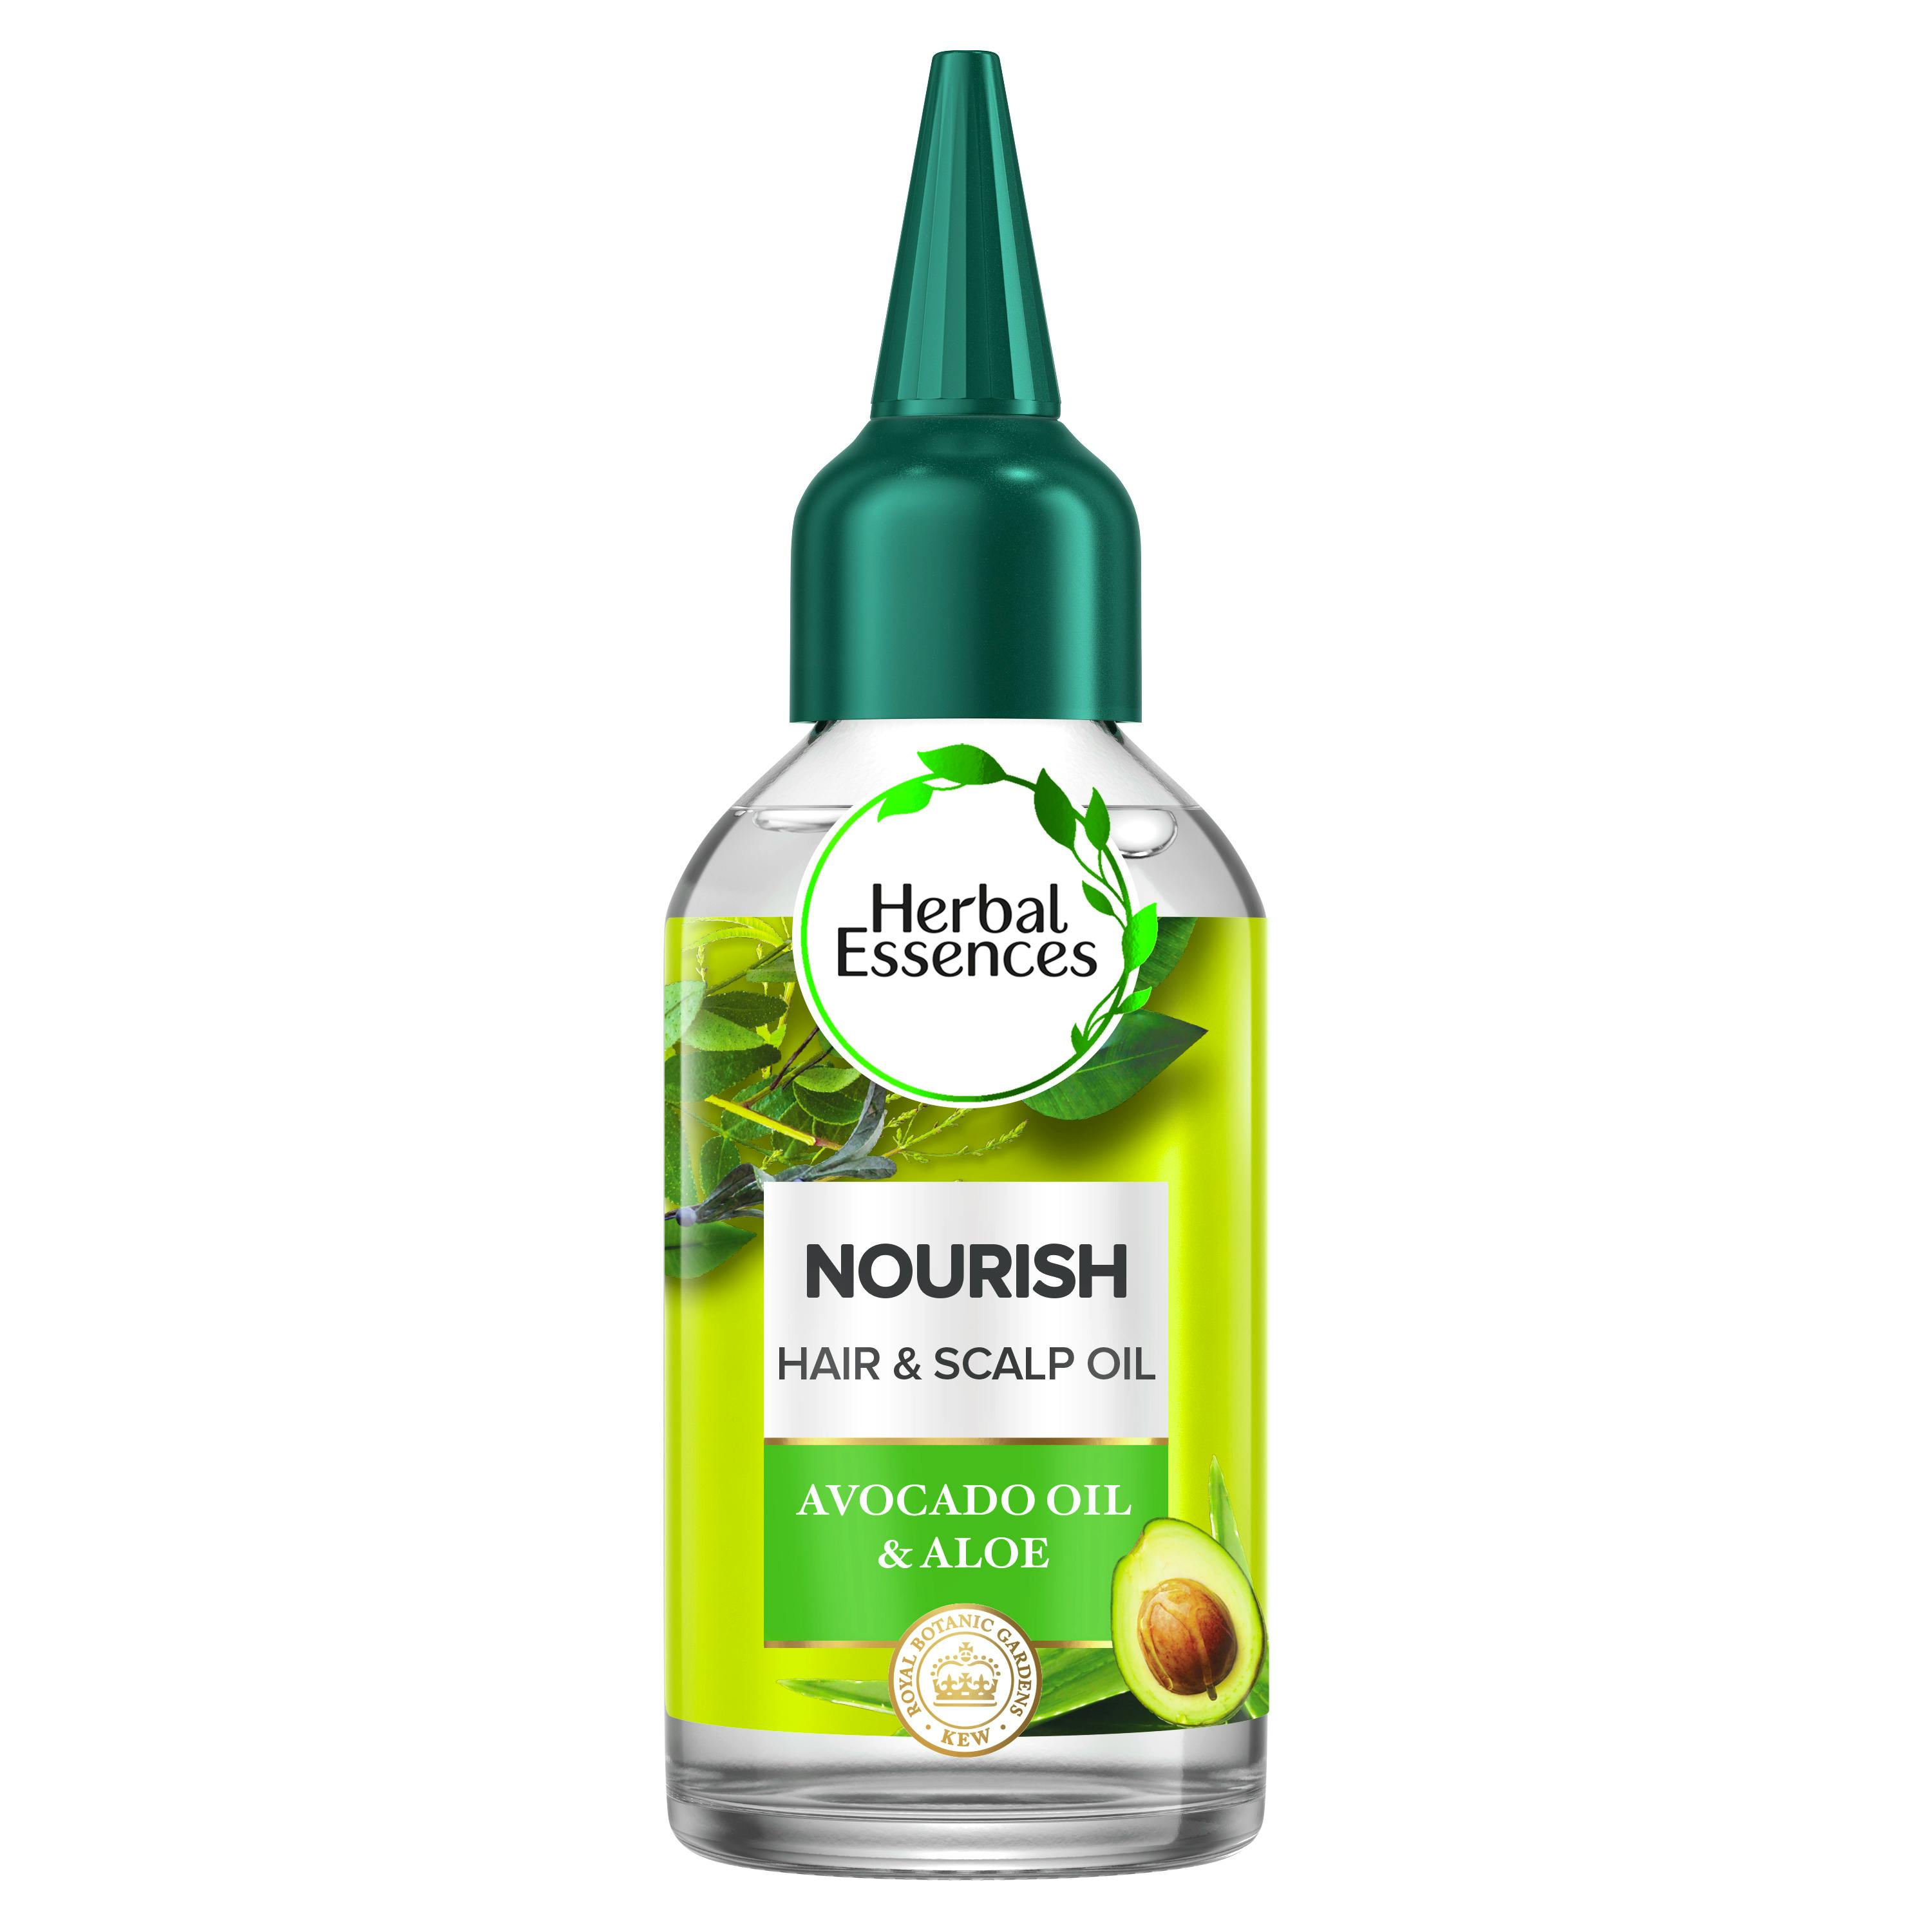 Væsen Kilde Krønike Herbal Essences Nourish Avocado Oil & Aloe Hair & Scalp Oil 100 ml - 36.95  kr